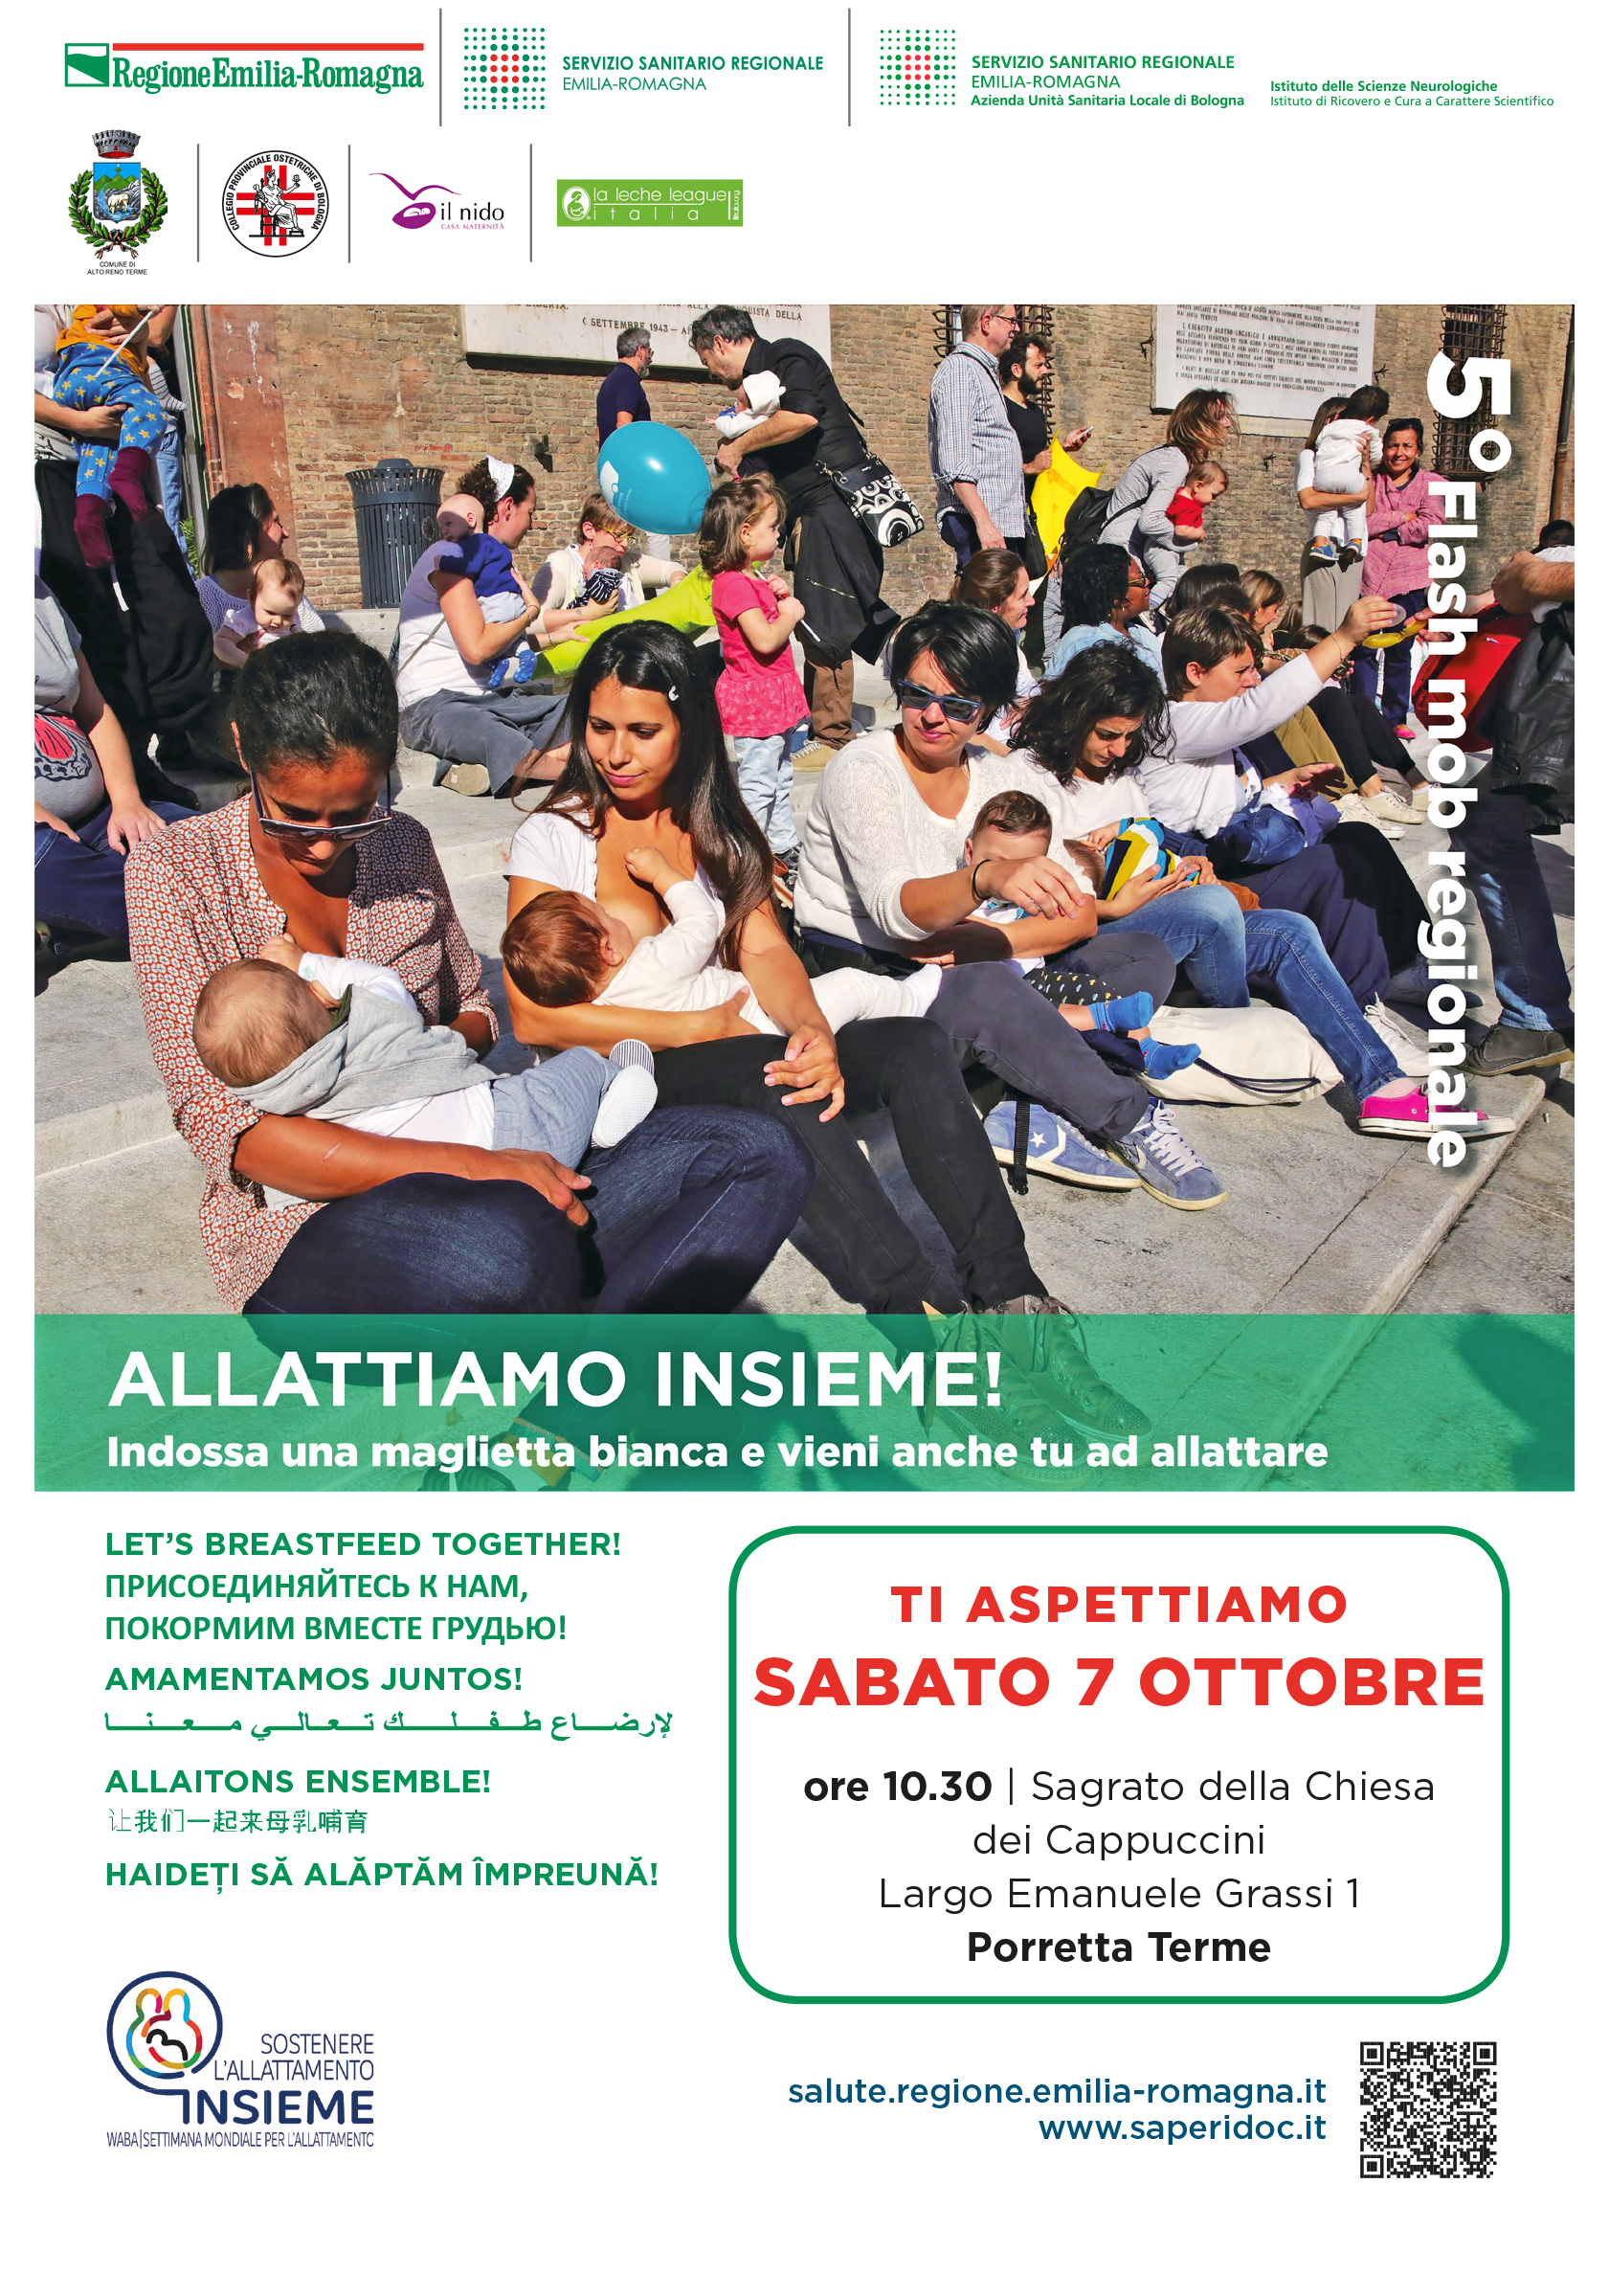  Allattiamo Insieme! - 5° Flash mob regionale - A Porretta Terme